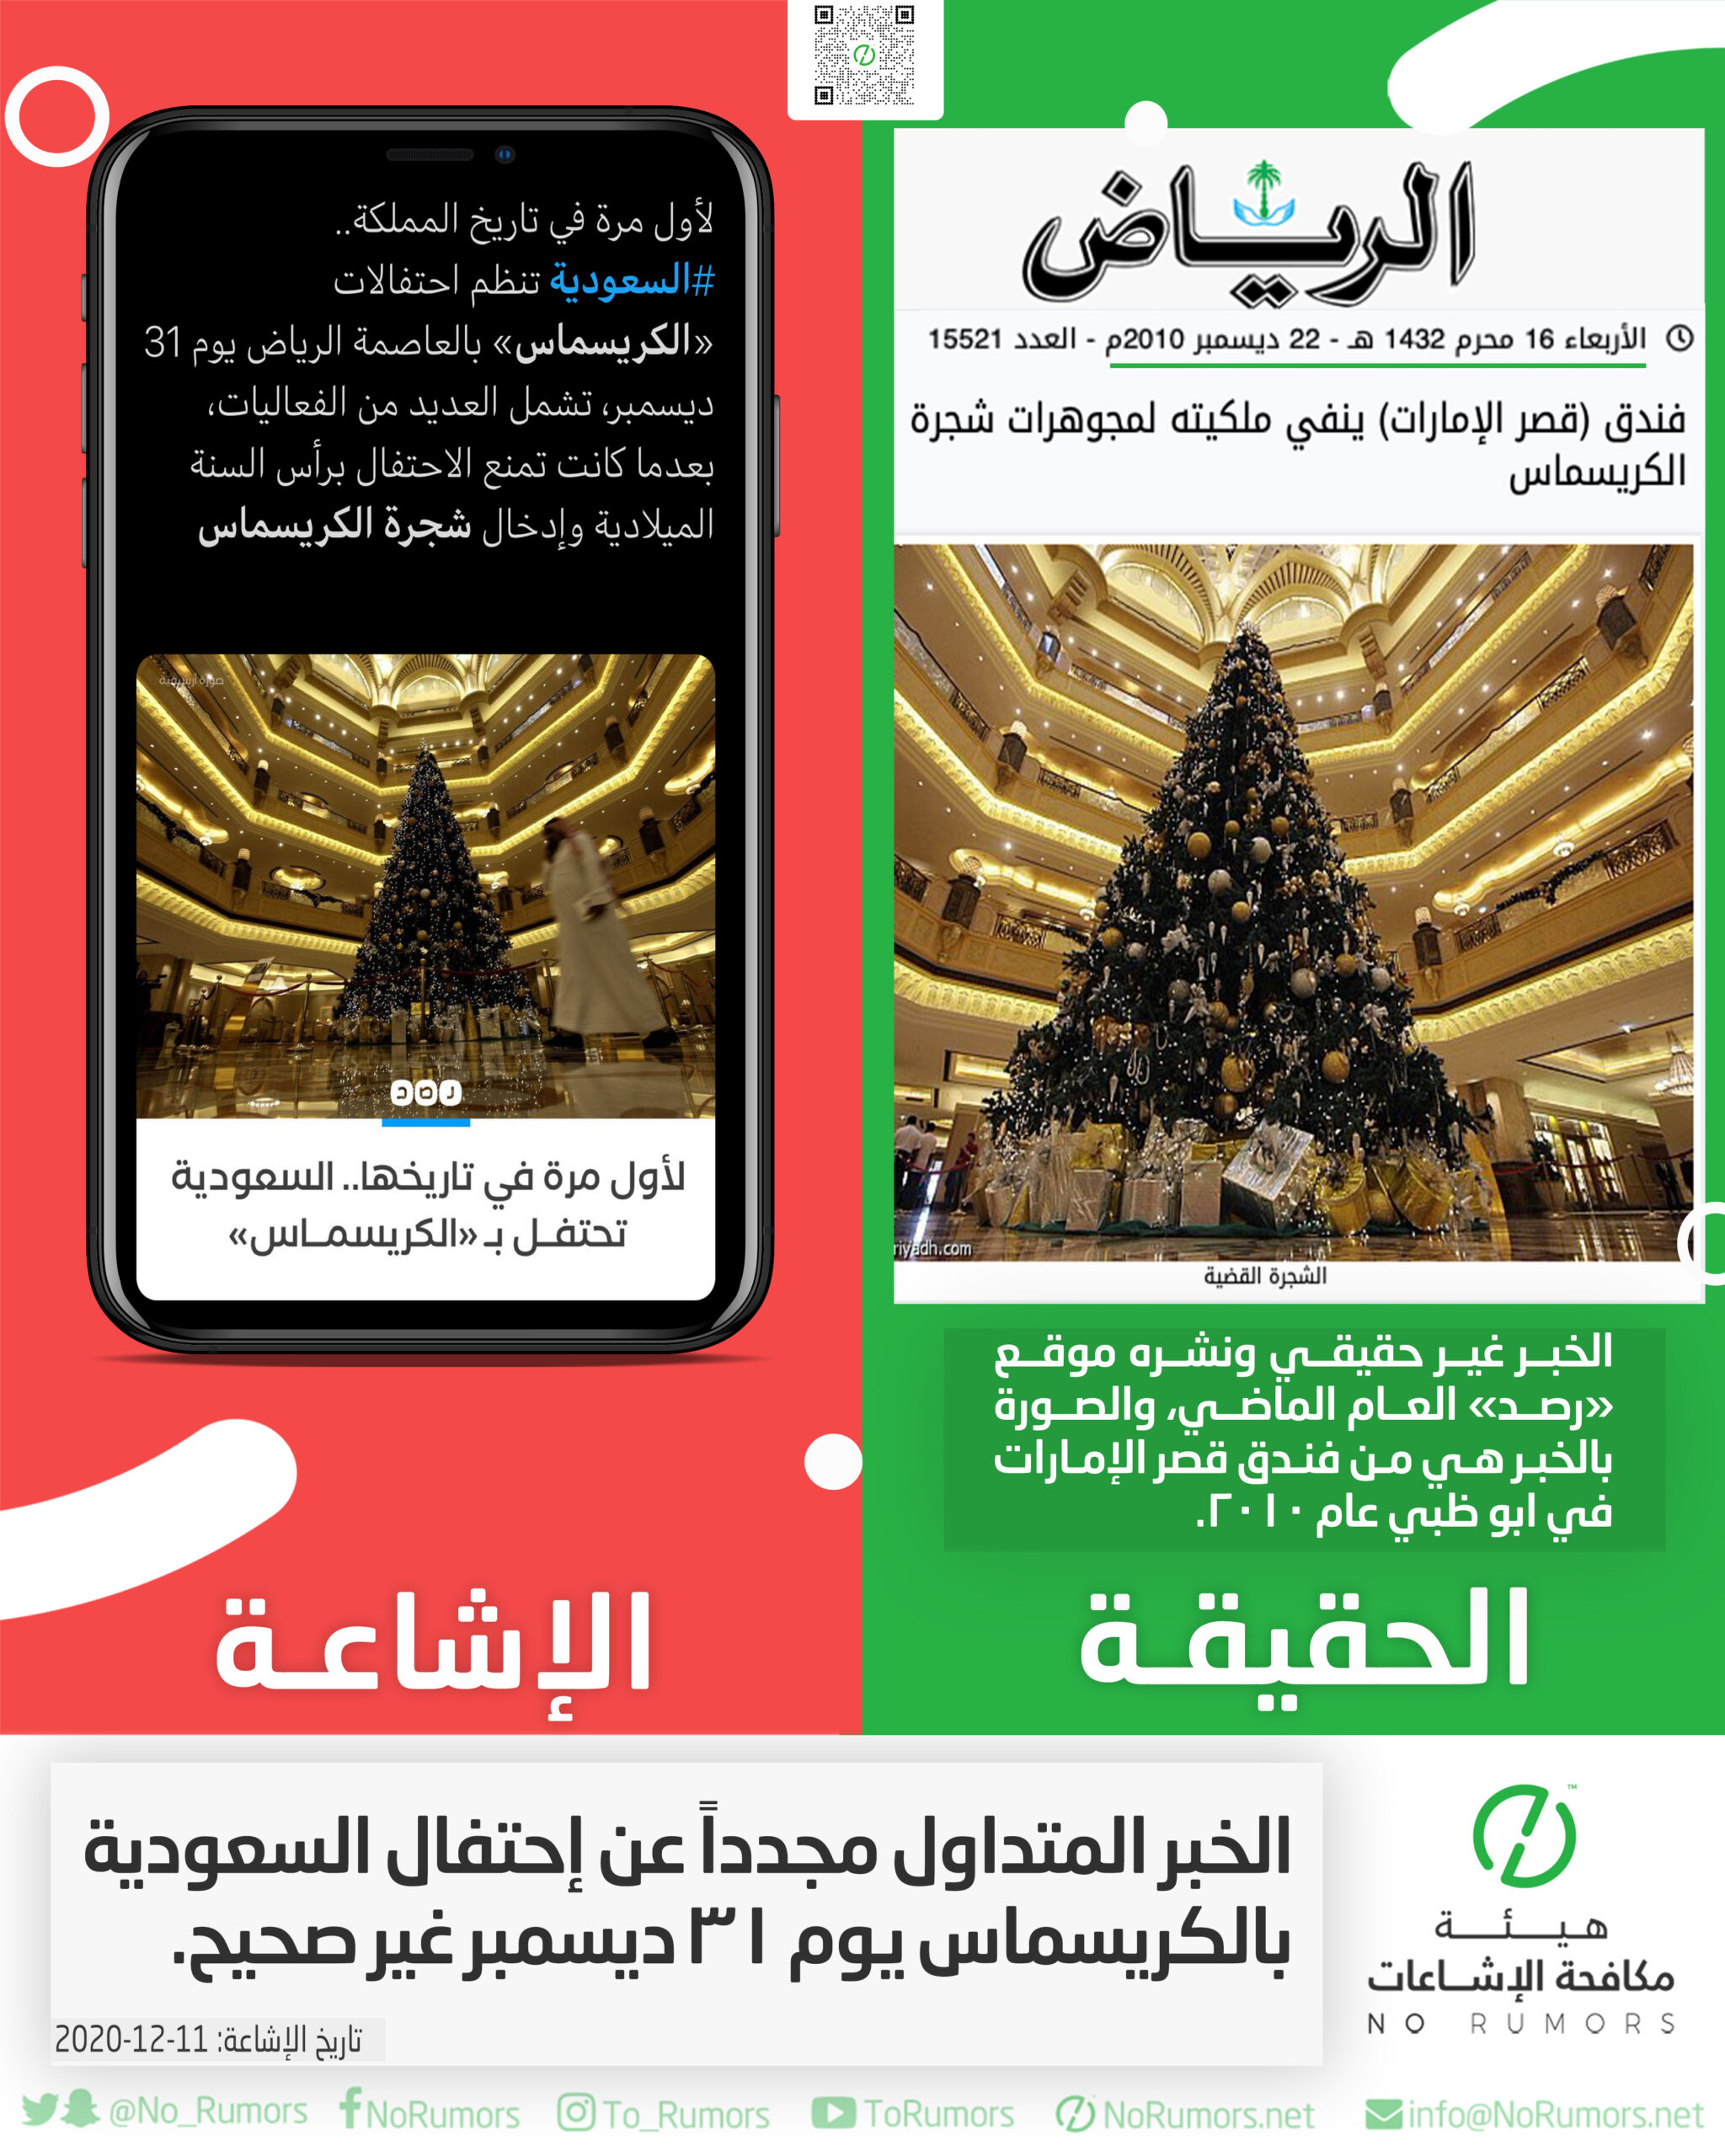 حقيقة الخبر المتداول مجدداً عن إحتفال السعودية بالكريسماس يوم ٣١ ديسمبر